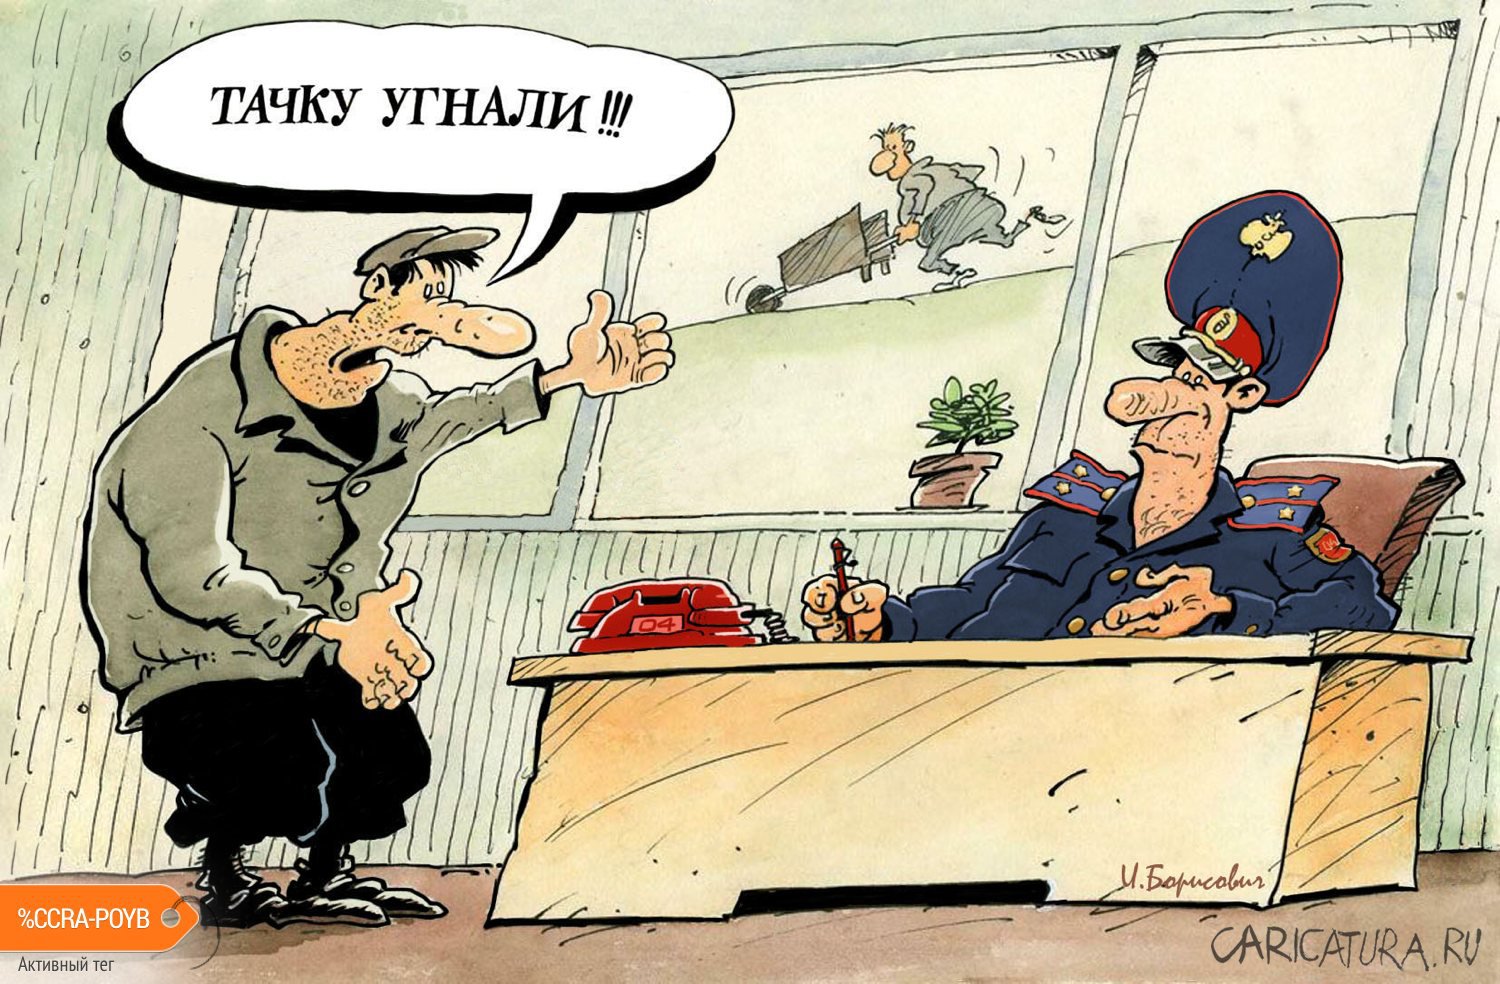 Карикатура "Тачку угнали", Игорь Елистратов